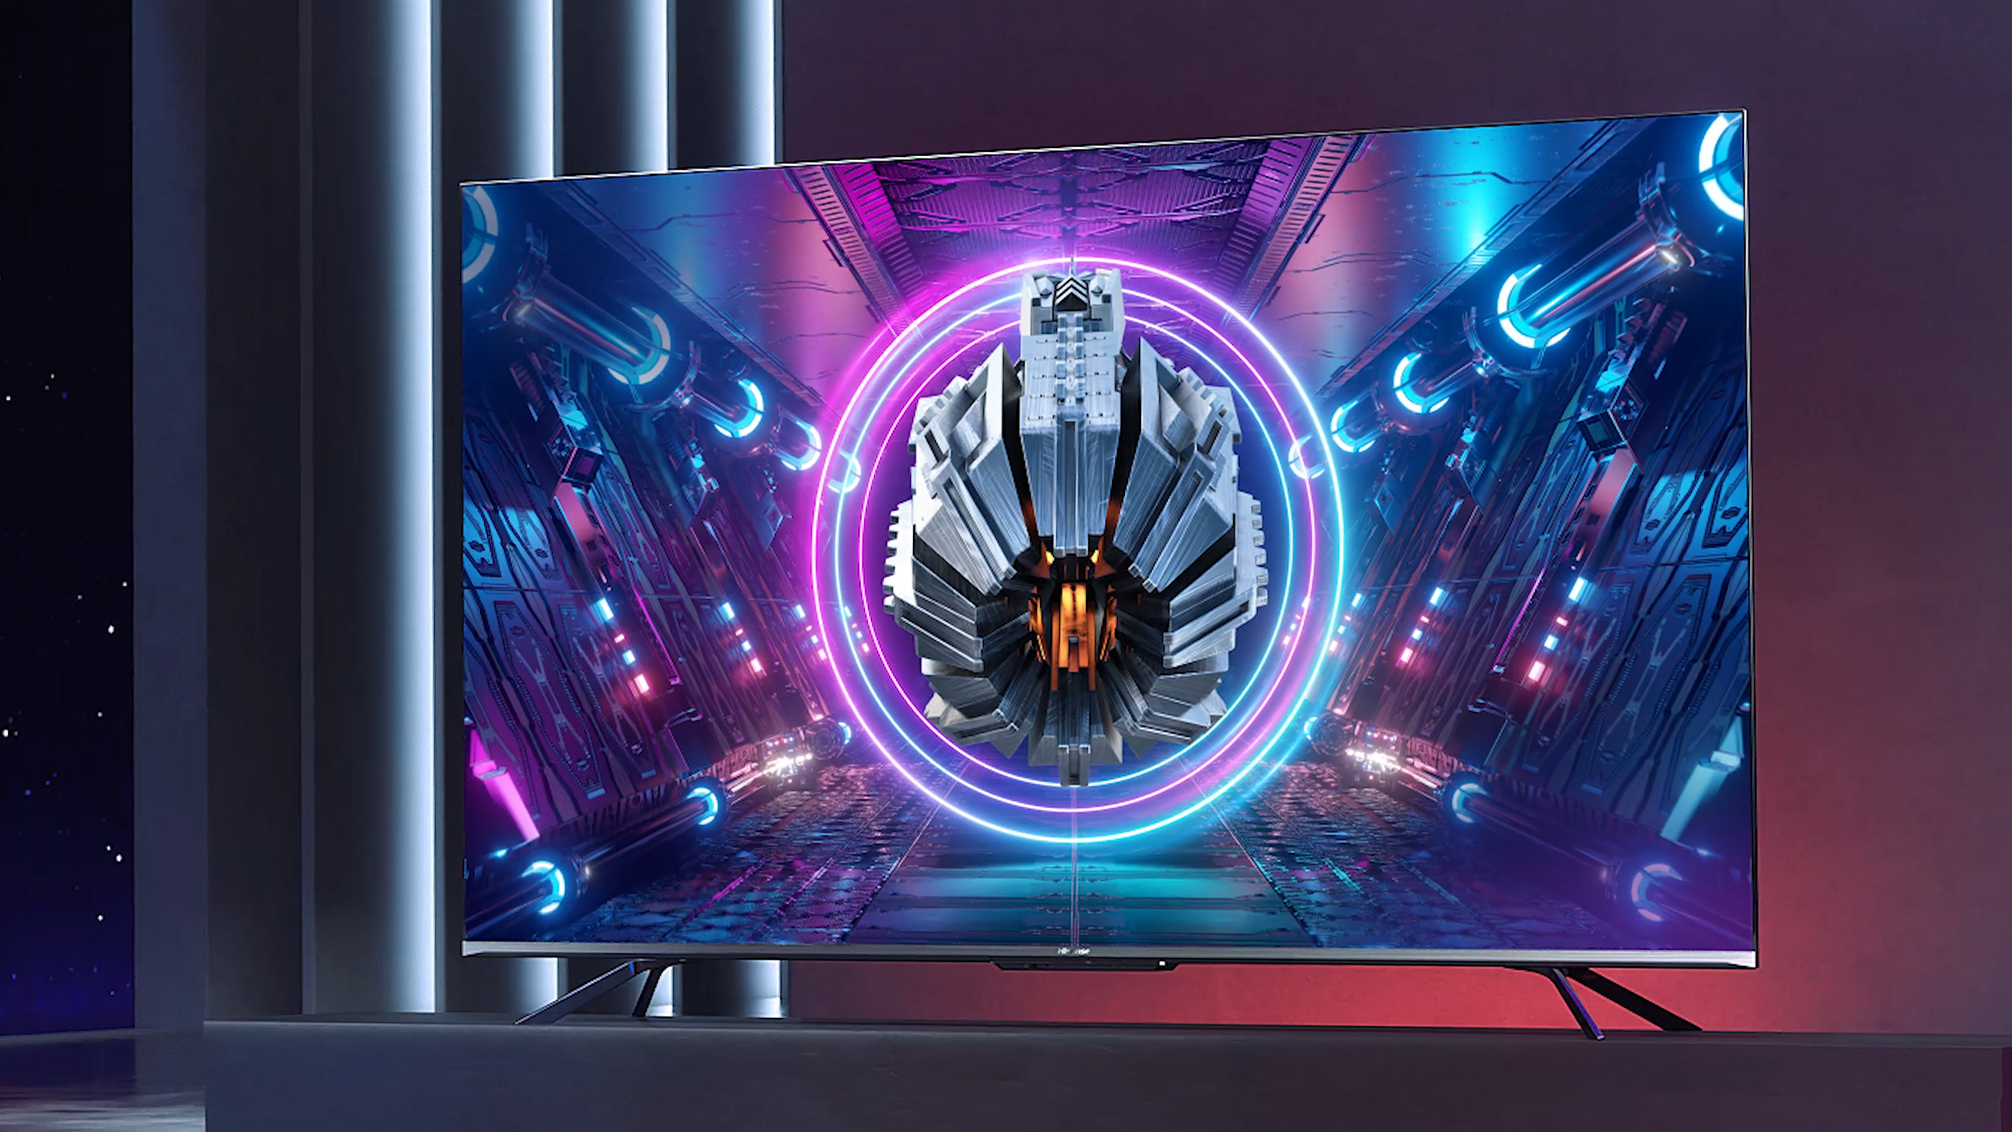 The Hisense U7G ULED TV displaying an abstract purple pattern